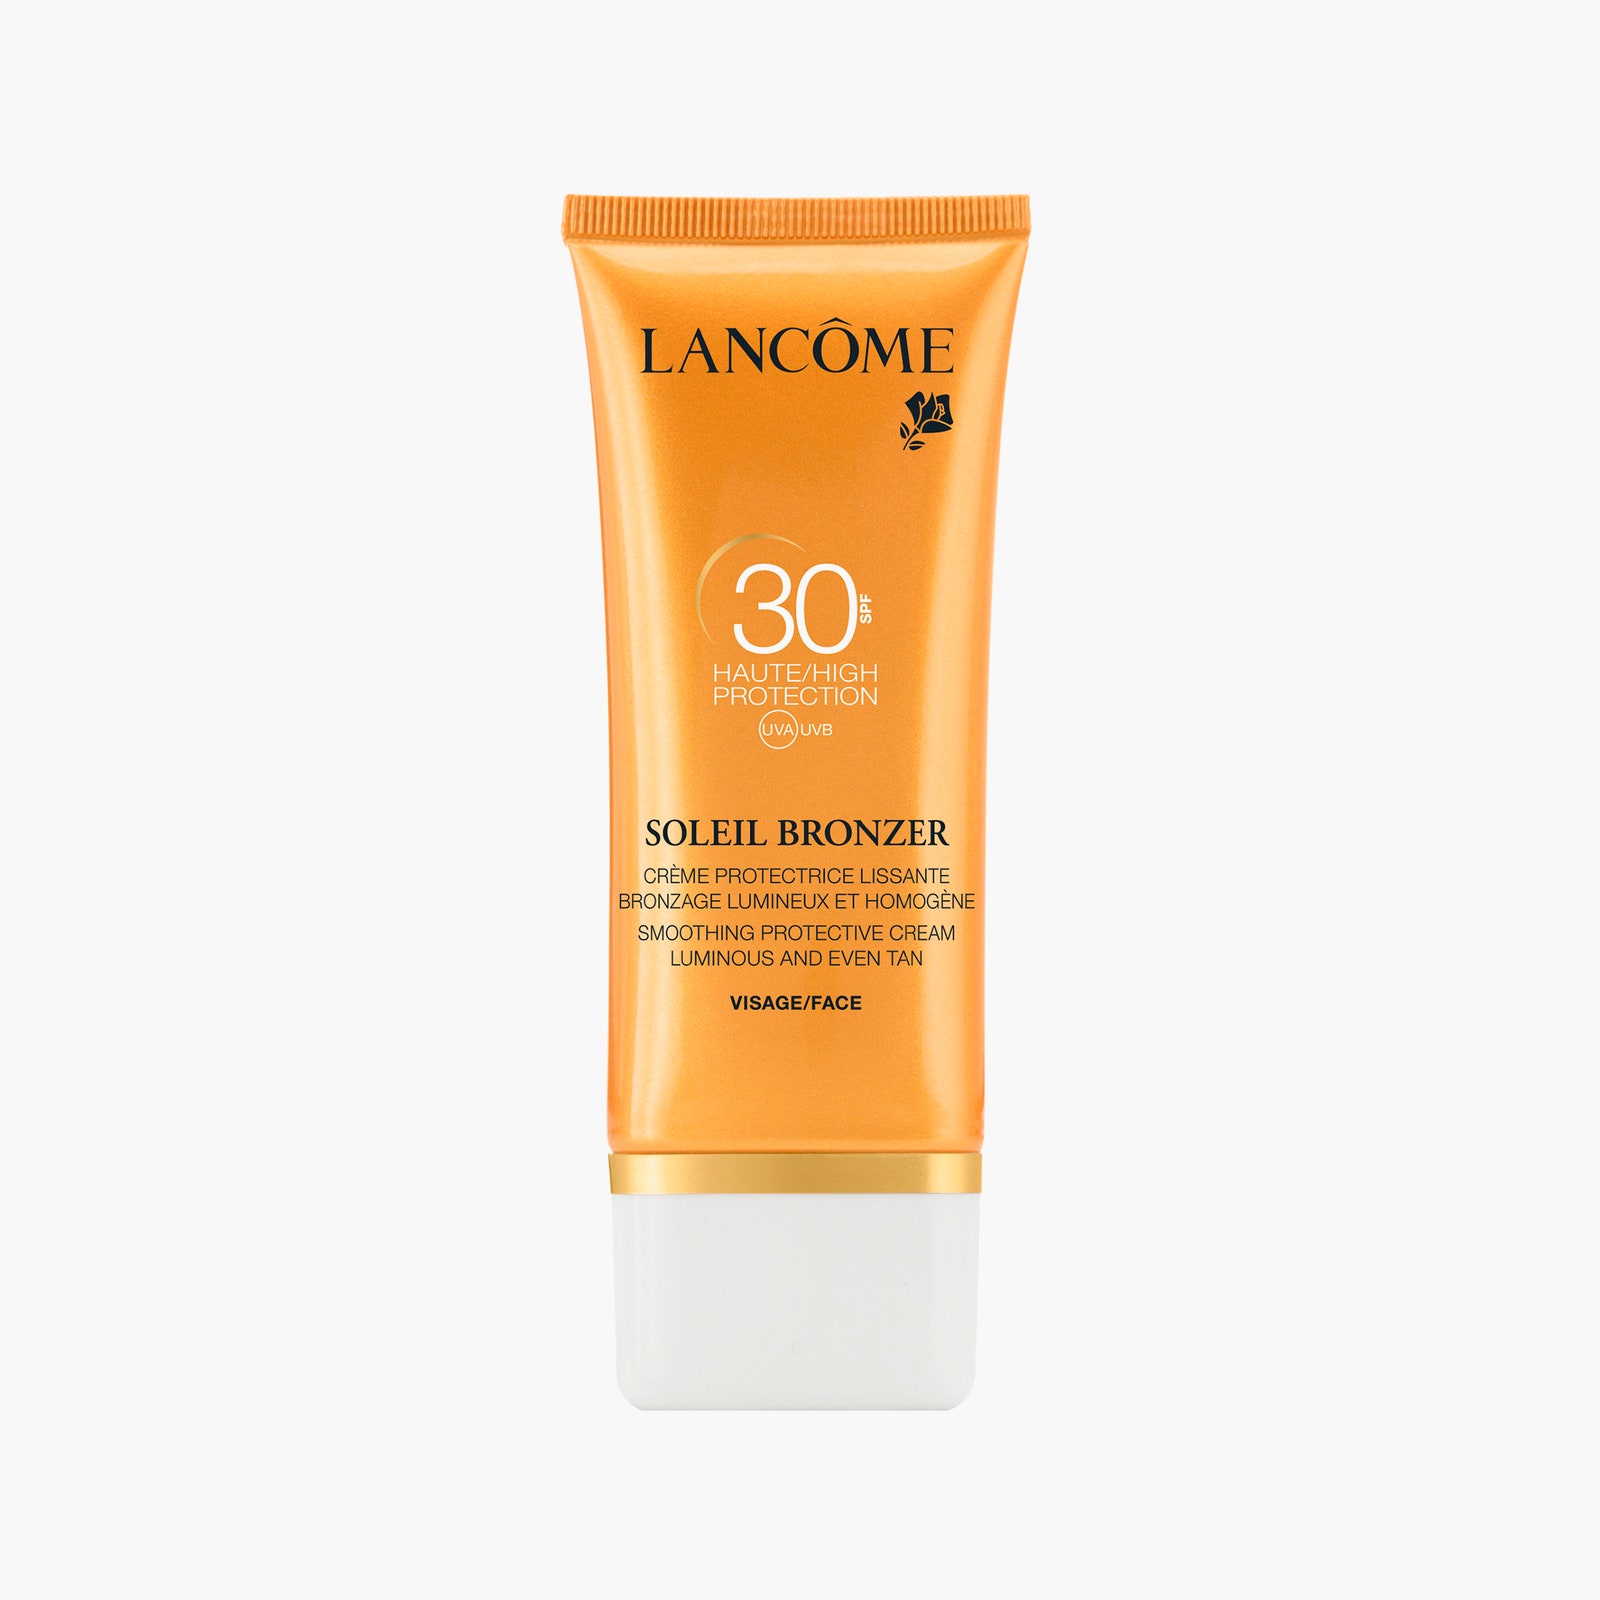 Увлажняющий солнцезащитный крем для лица Soleil Bronzer Cream SPF 30 Lancôme 2656 рублей